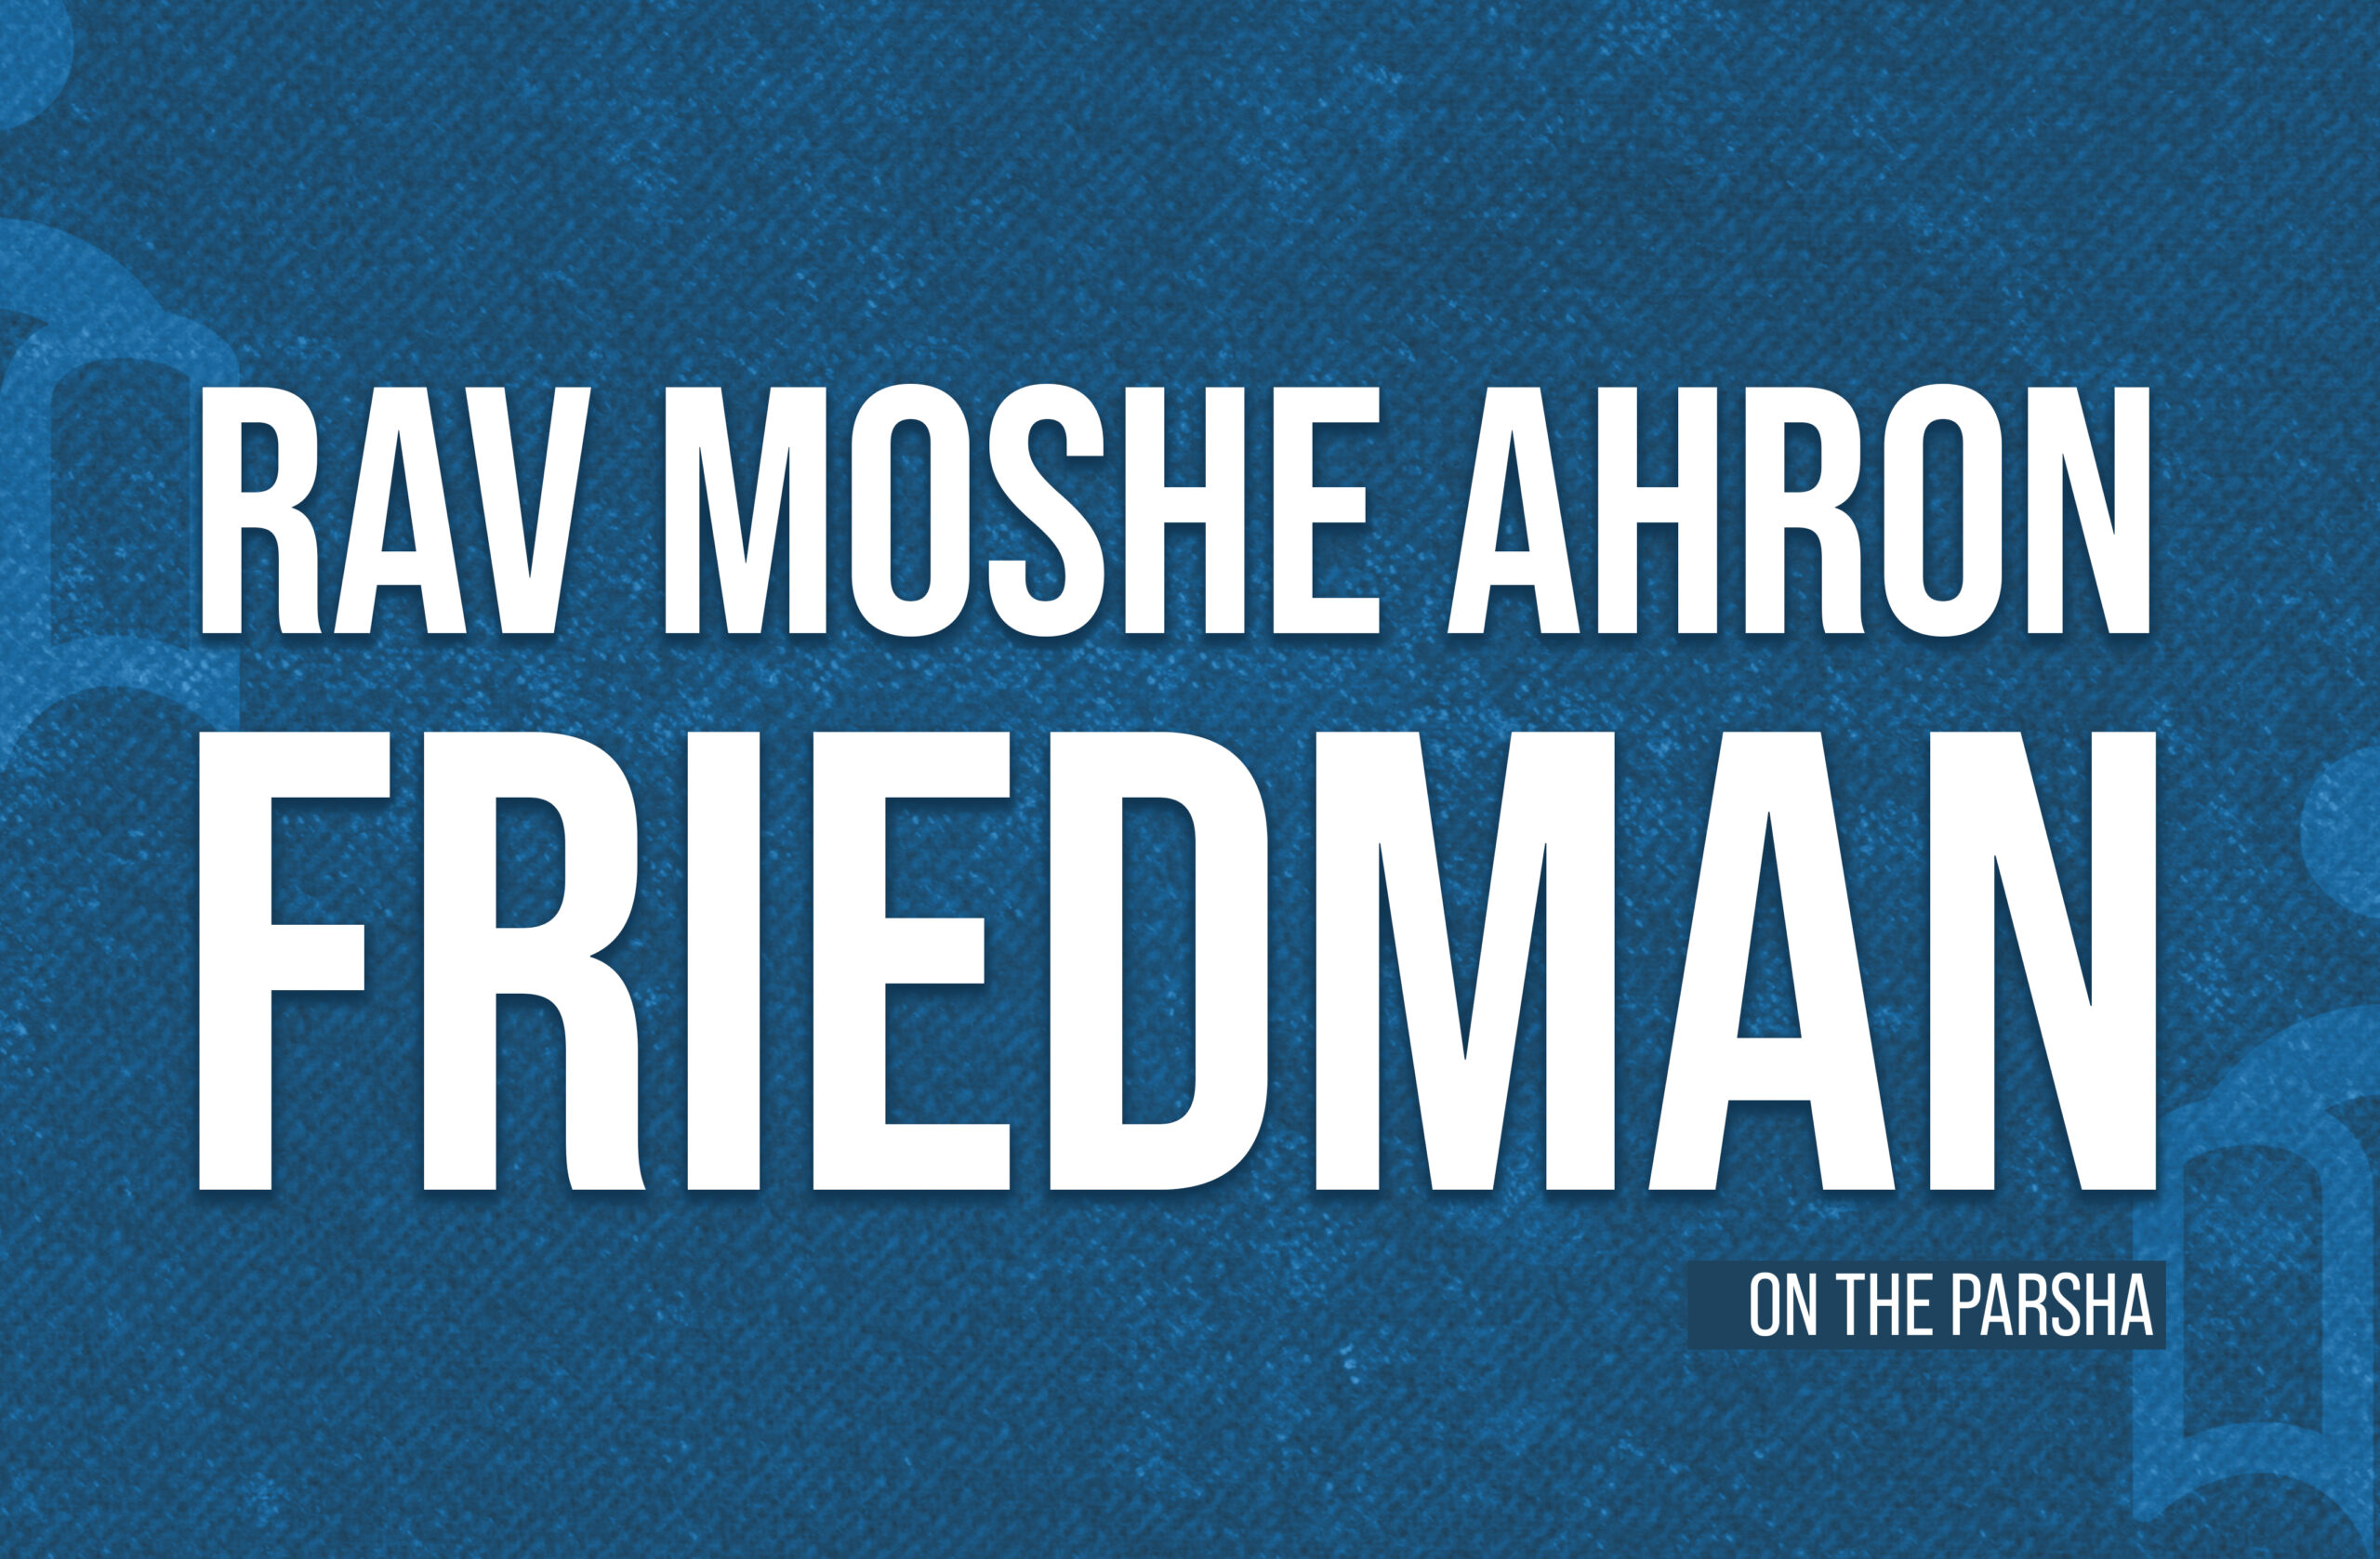 NEW SERIES: Rav Moshe Ahron Friedman on the Parsha